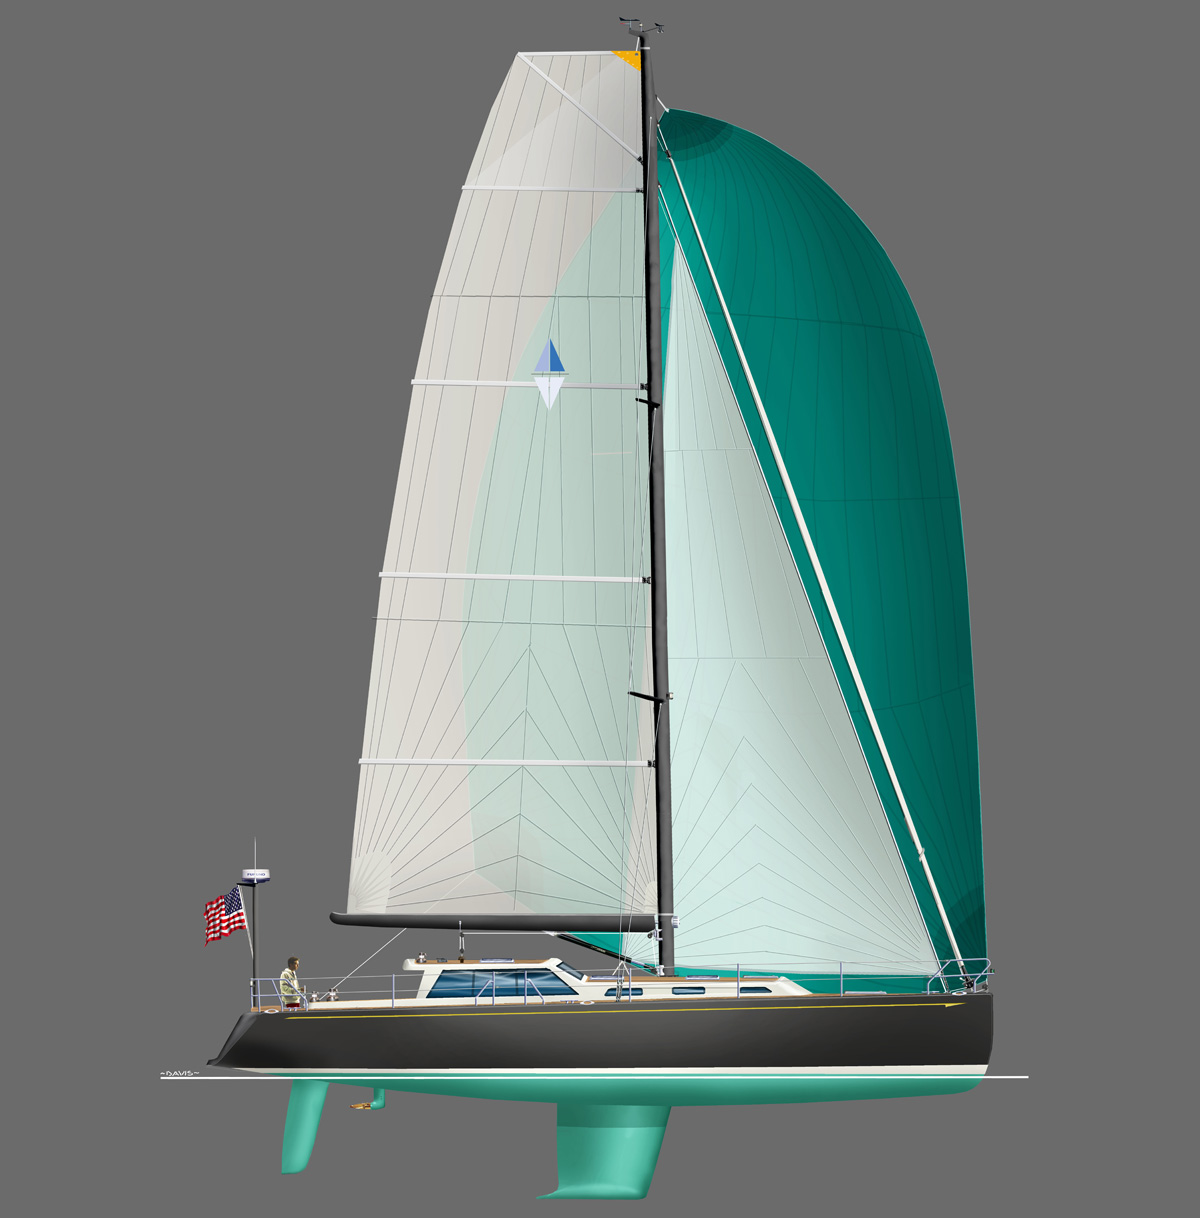 Yacht Design > Sailing Yachts Under 20M > Seren